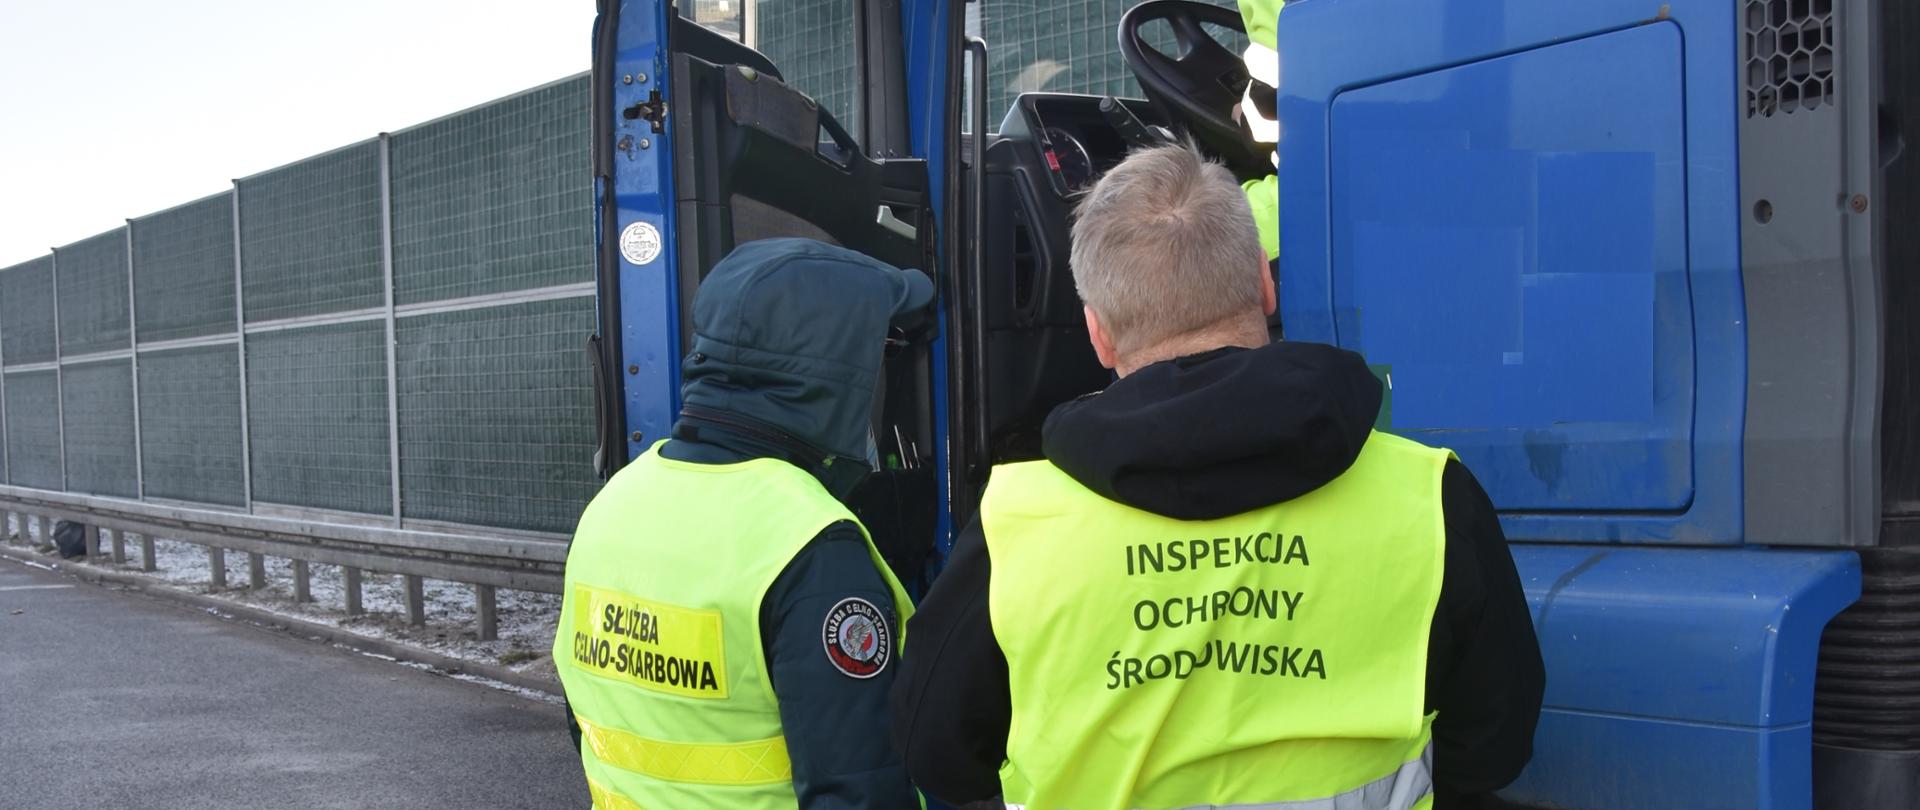 Inspektor Wojewódzkiego Inspektoratu Ochrony Środowiska w Warszawie wraz z funkcjonariuszem Krajowej Administracji Skarbowej kontroluje samochód ciężarowy.